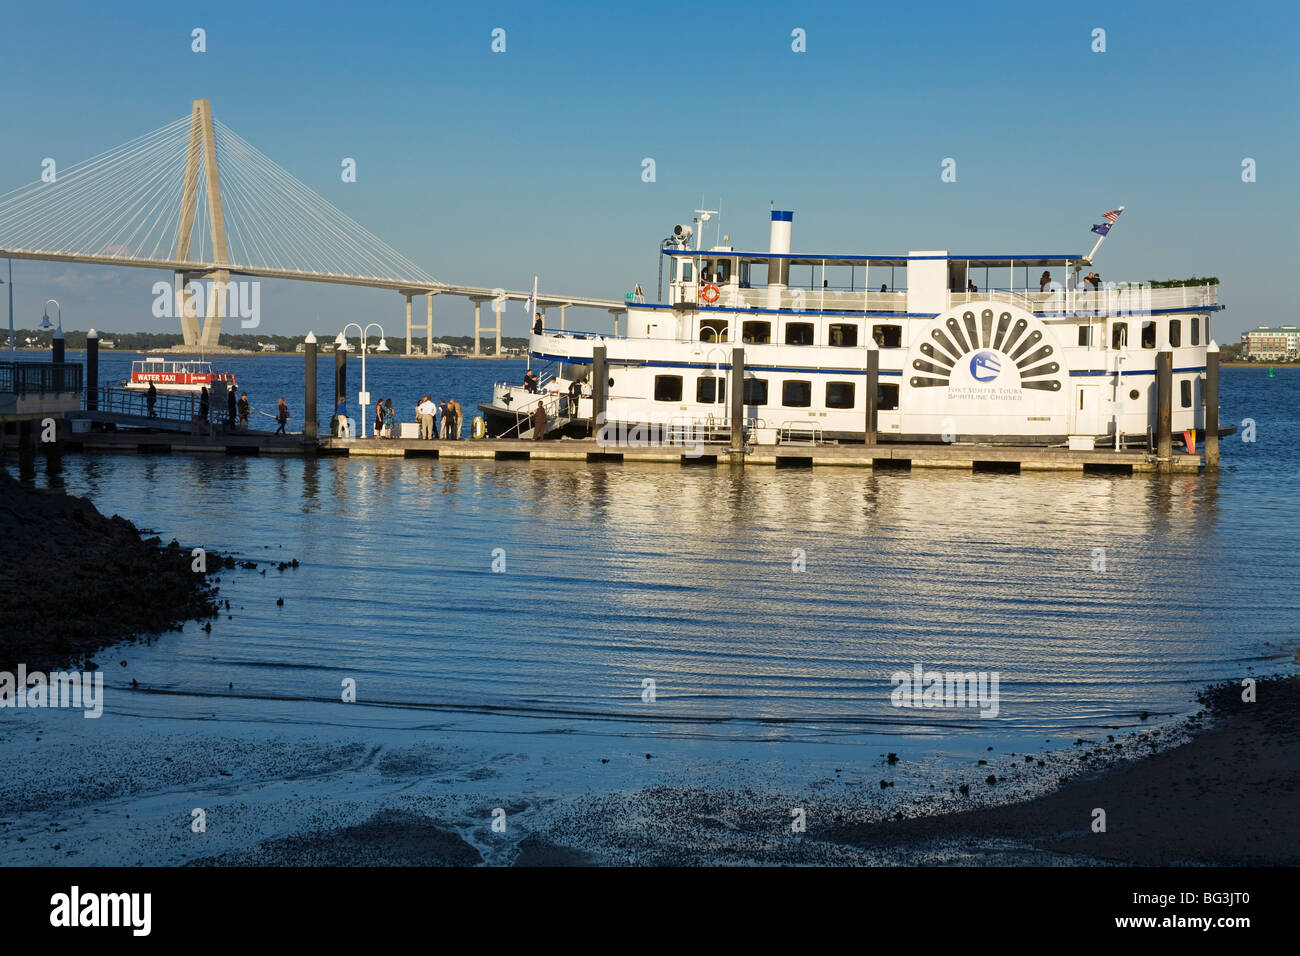 Excursion en bateau et pont Arthur Ravenel Jr., Liberty Square, Charleston, Caroline du Sud, États-Unis d'Amérique, Amérique du Nord Banque D'Images